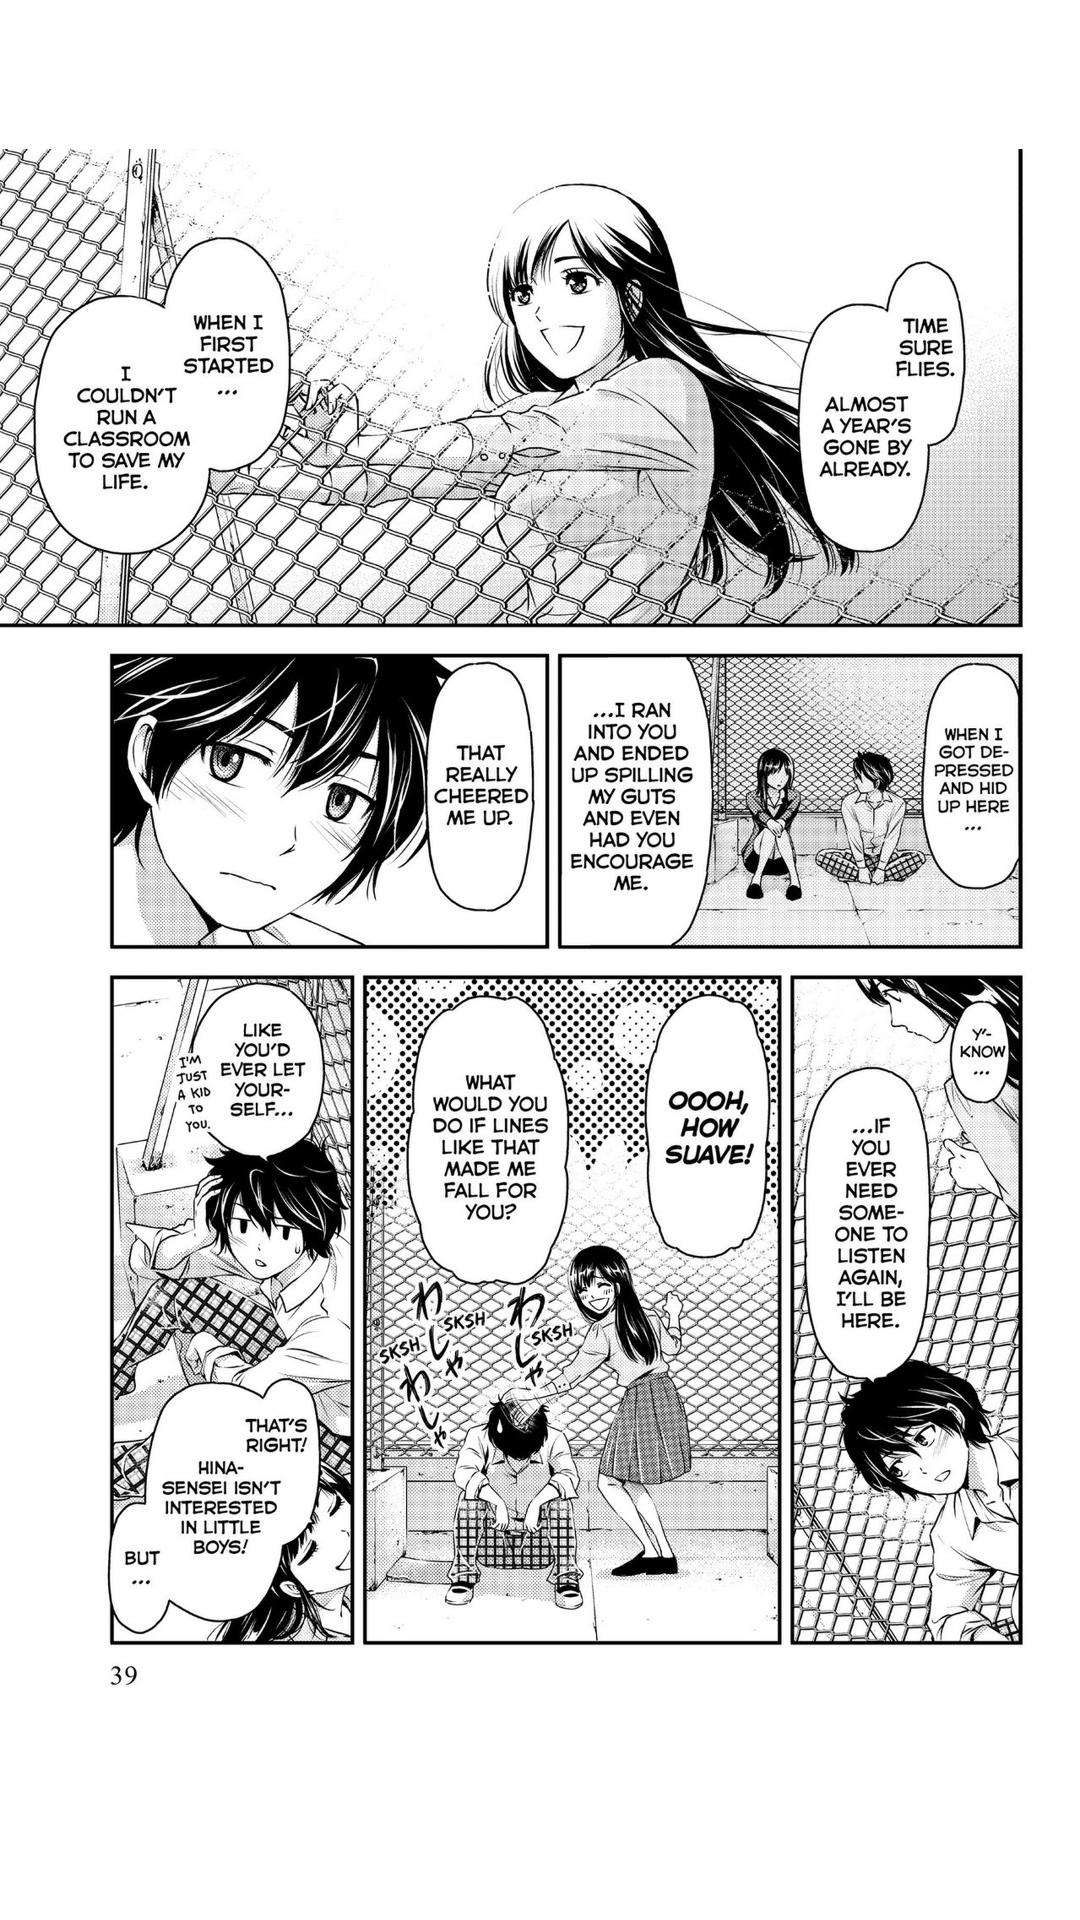 Review do mangá de Domestic na Kanojo (DomeKano/ Domestic Girlfriend) -  Lacradores Desintoxicados